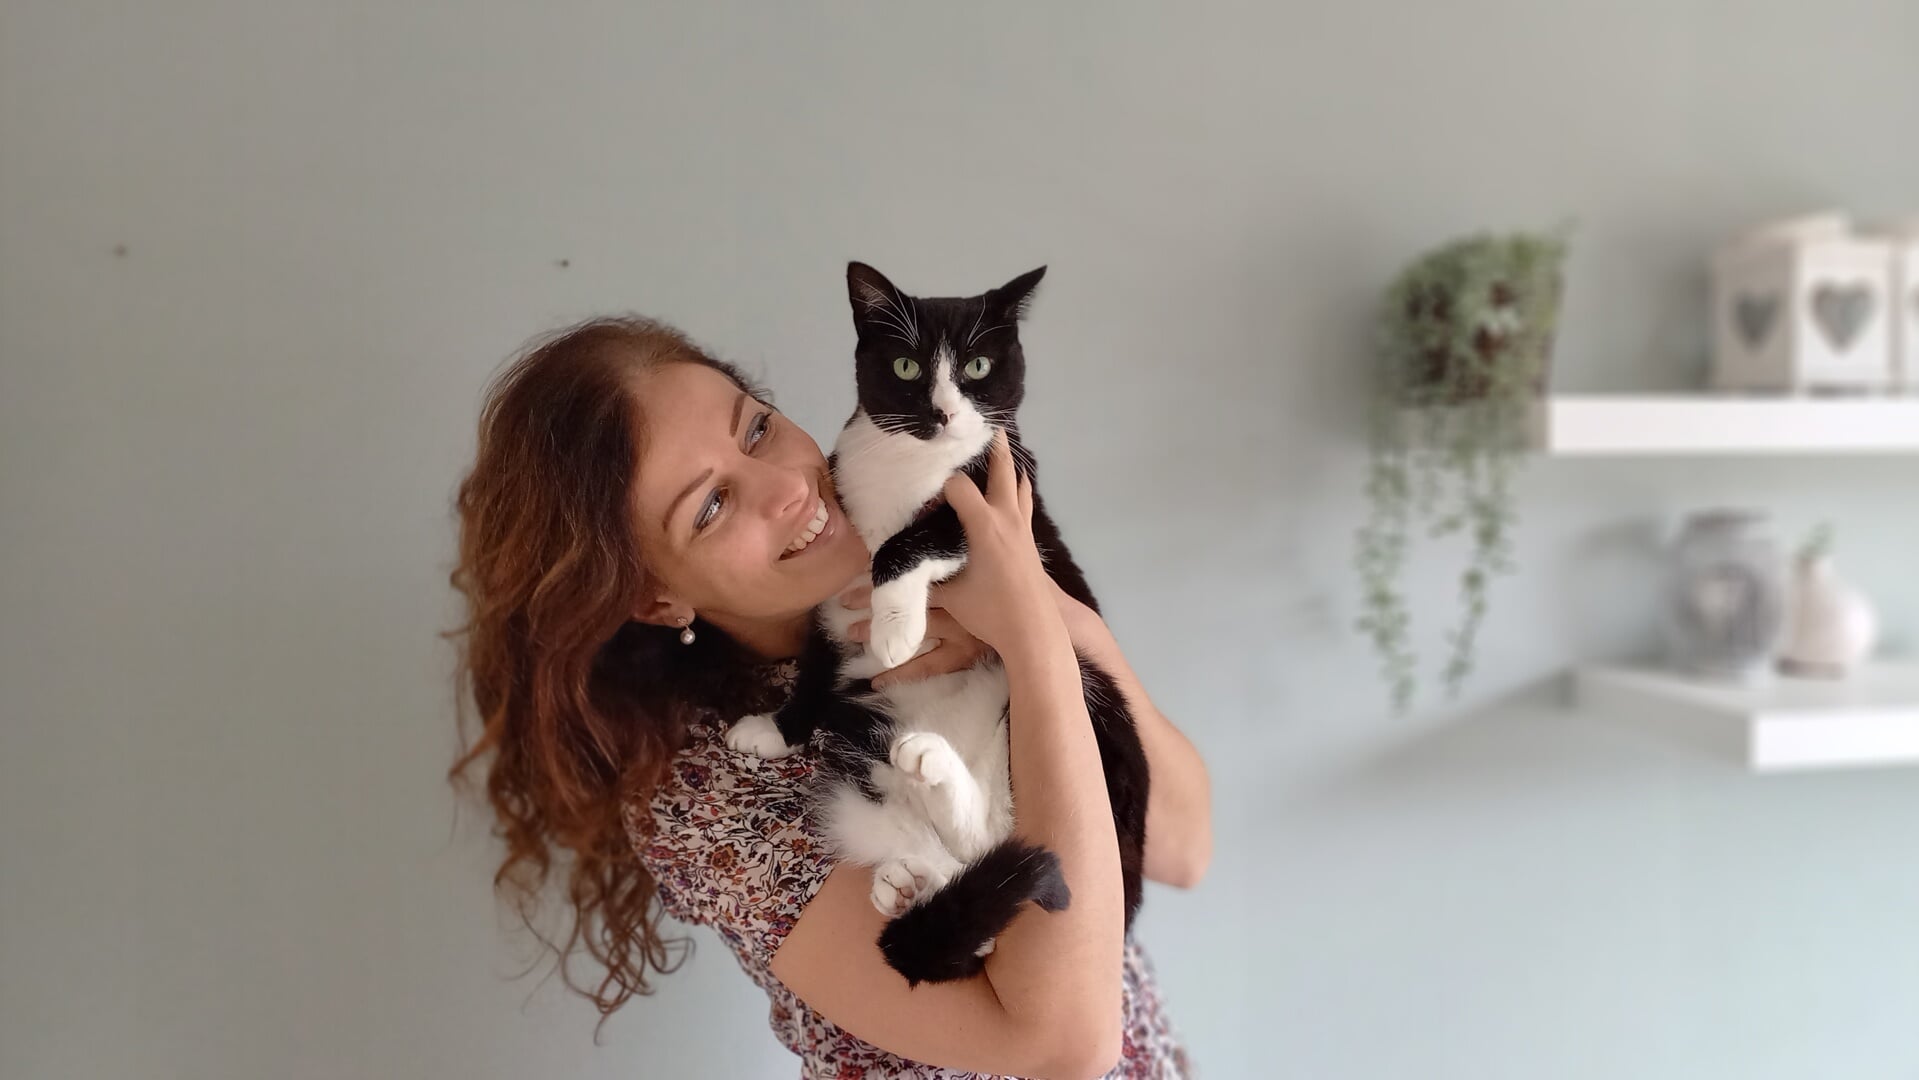 Marja Stienstra samen met haar kat Beesie. 'Katten fascineren en inspireren me in hoge mate en ik ben er trots op dat ik de stap heb durven zetten om met ze te werken'.